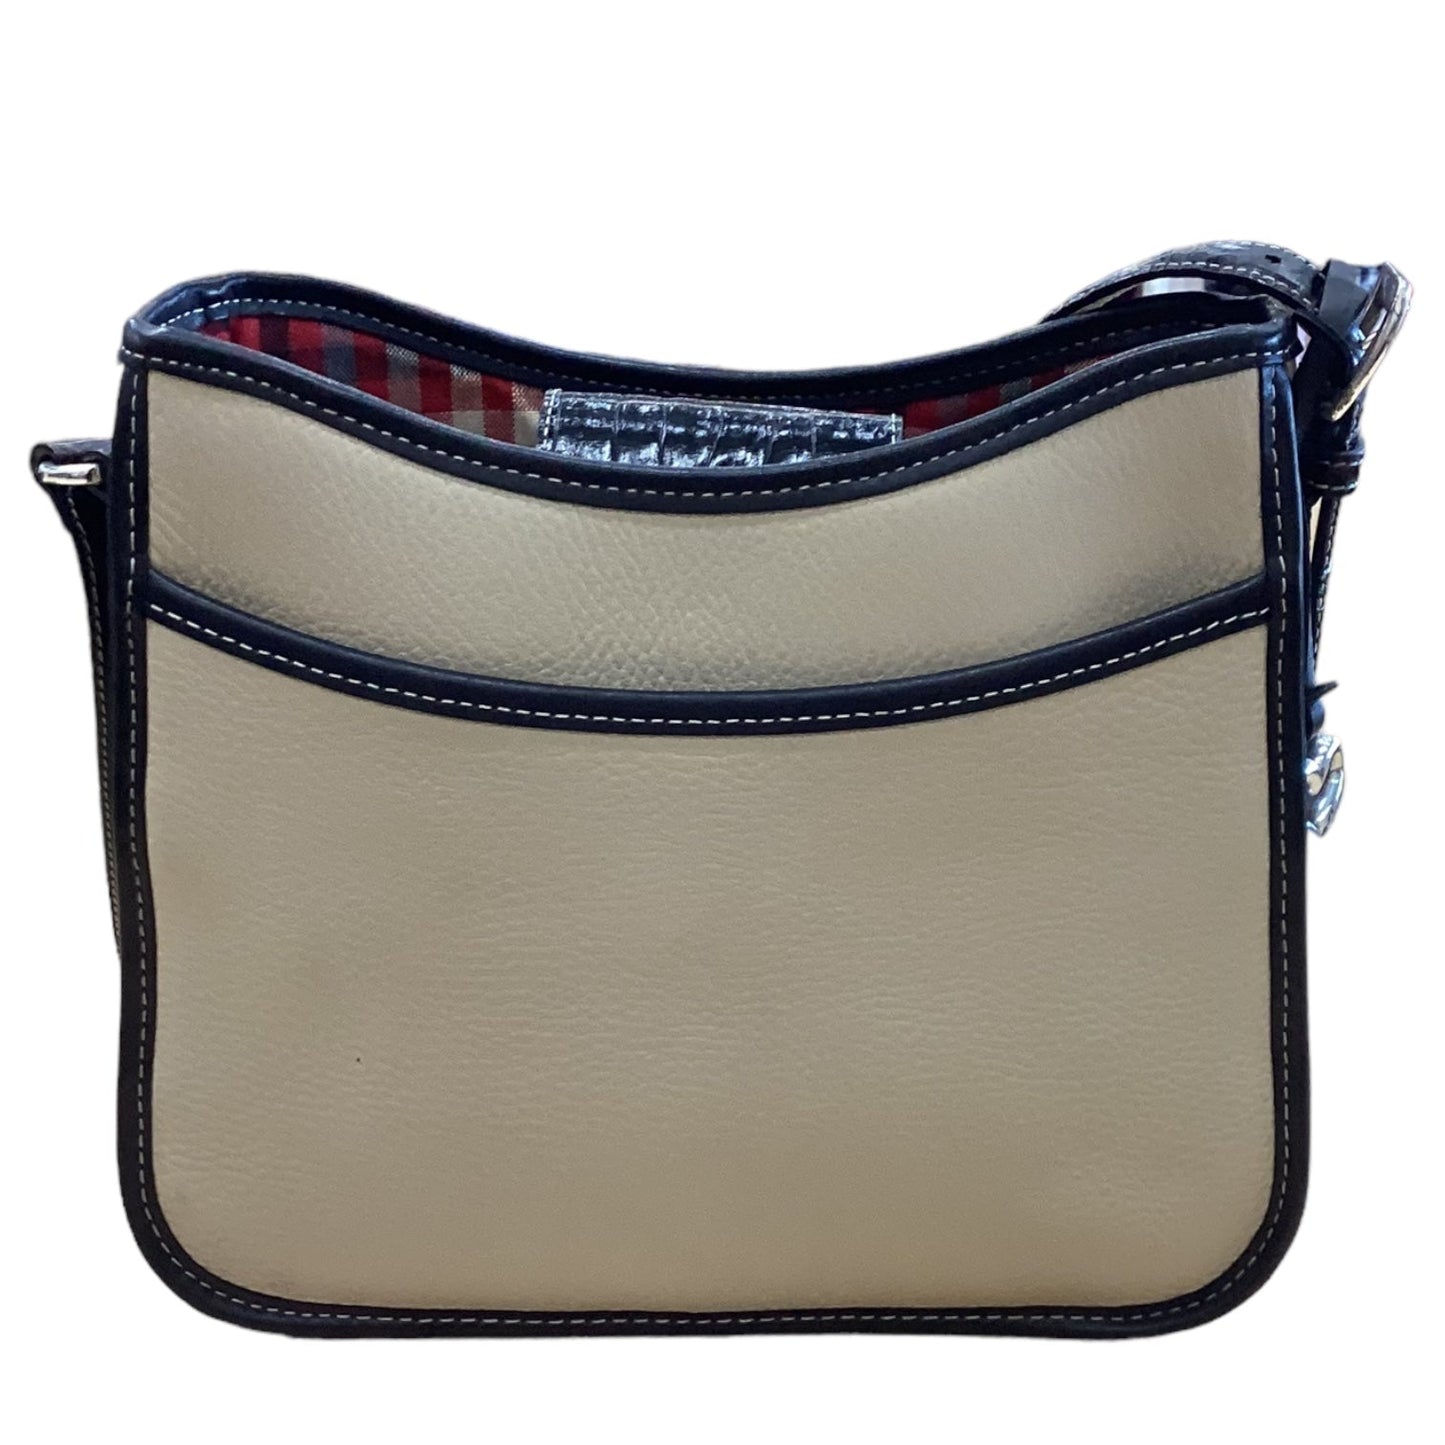 Handbag Designer By Brighton  Size: Medium